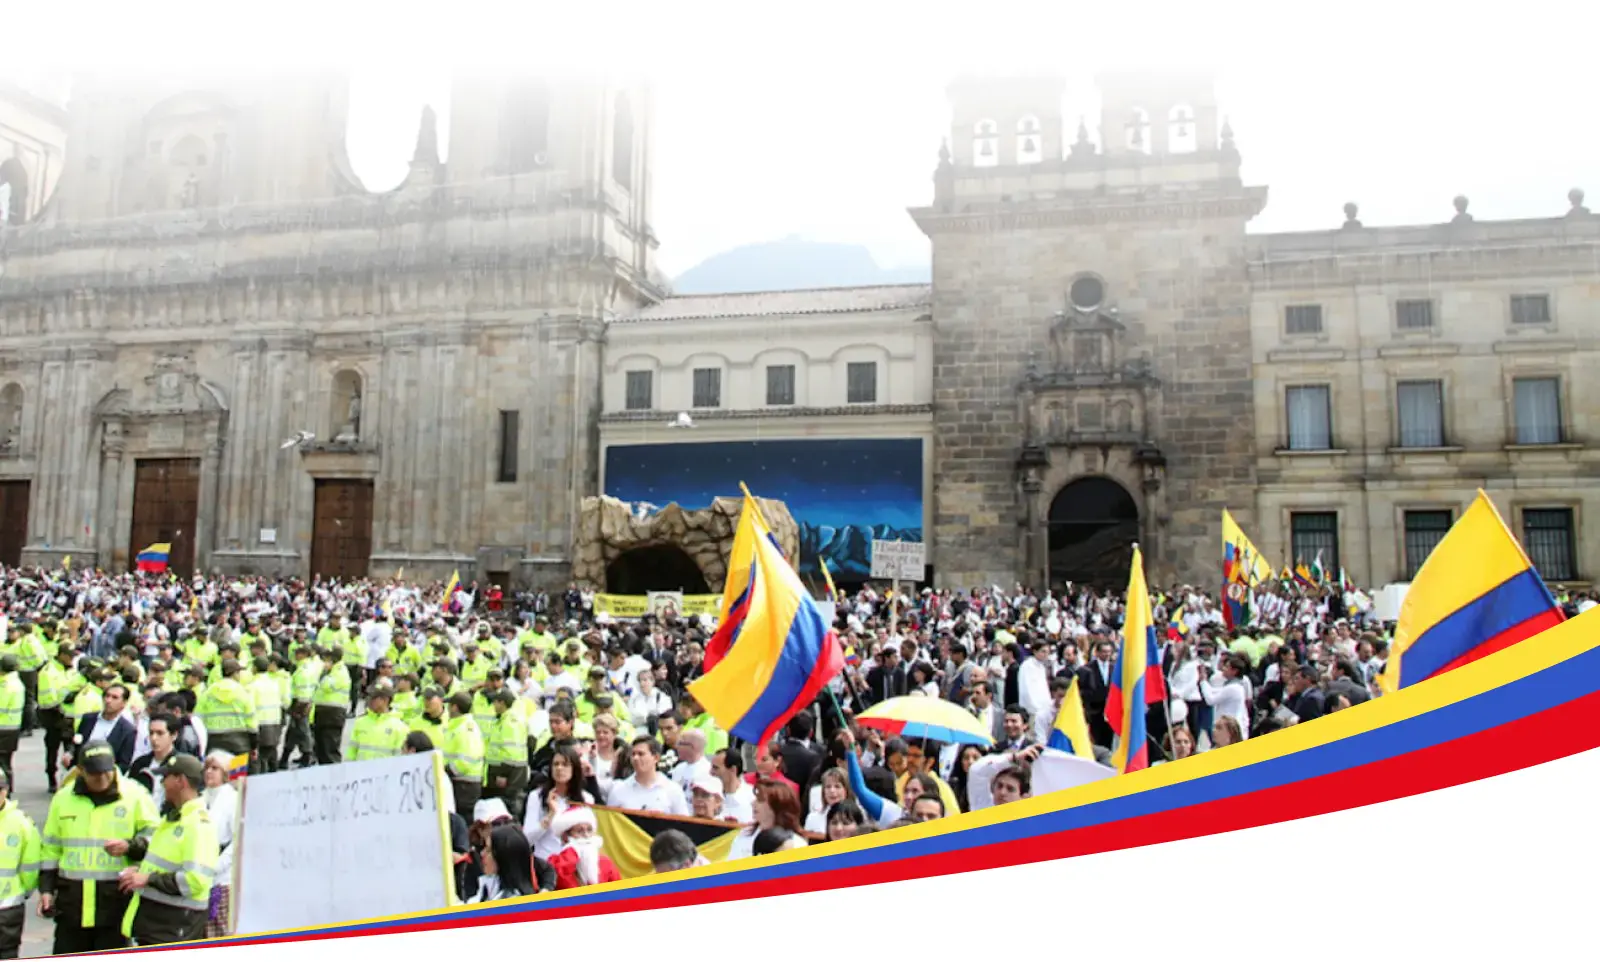 Una gran reunión de personas en Colombia, muchas de ellas sosteniendo la bandera colombiana, frente a un edificio federal prominente, posiblemente una catedral o una estructura gubernamental, con funcionarios encargados de hacer cumplir la ley en primer plano.